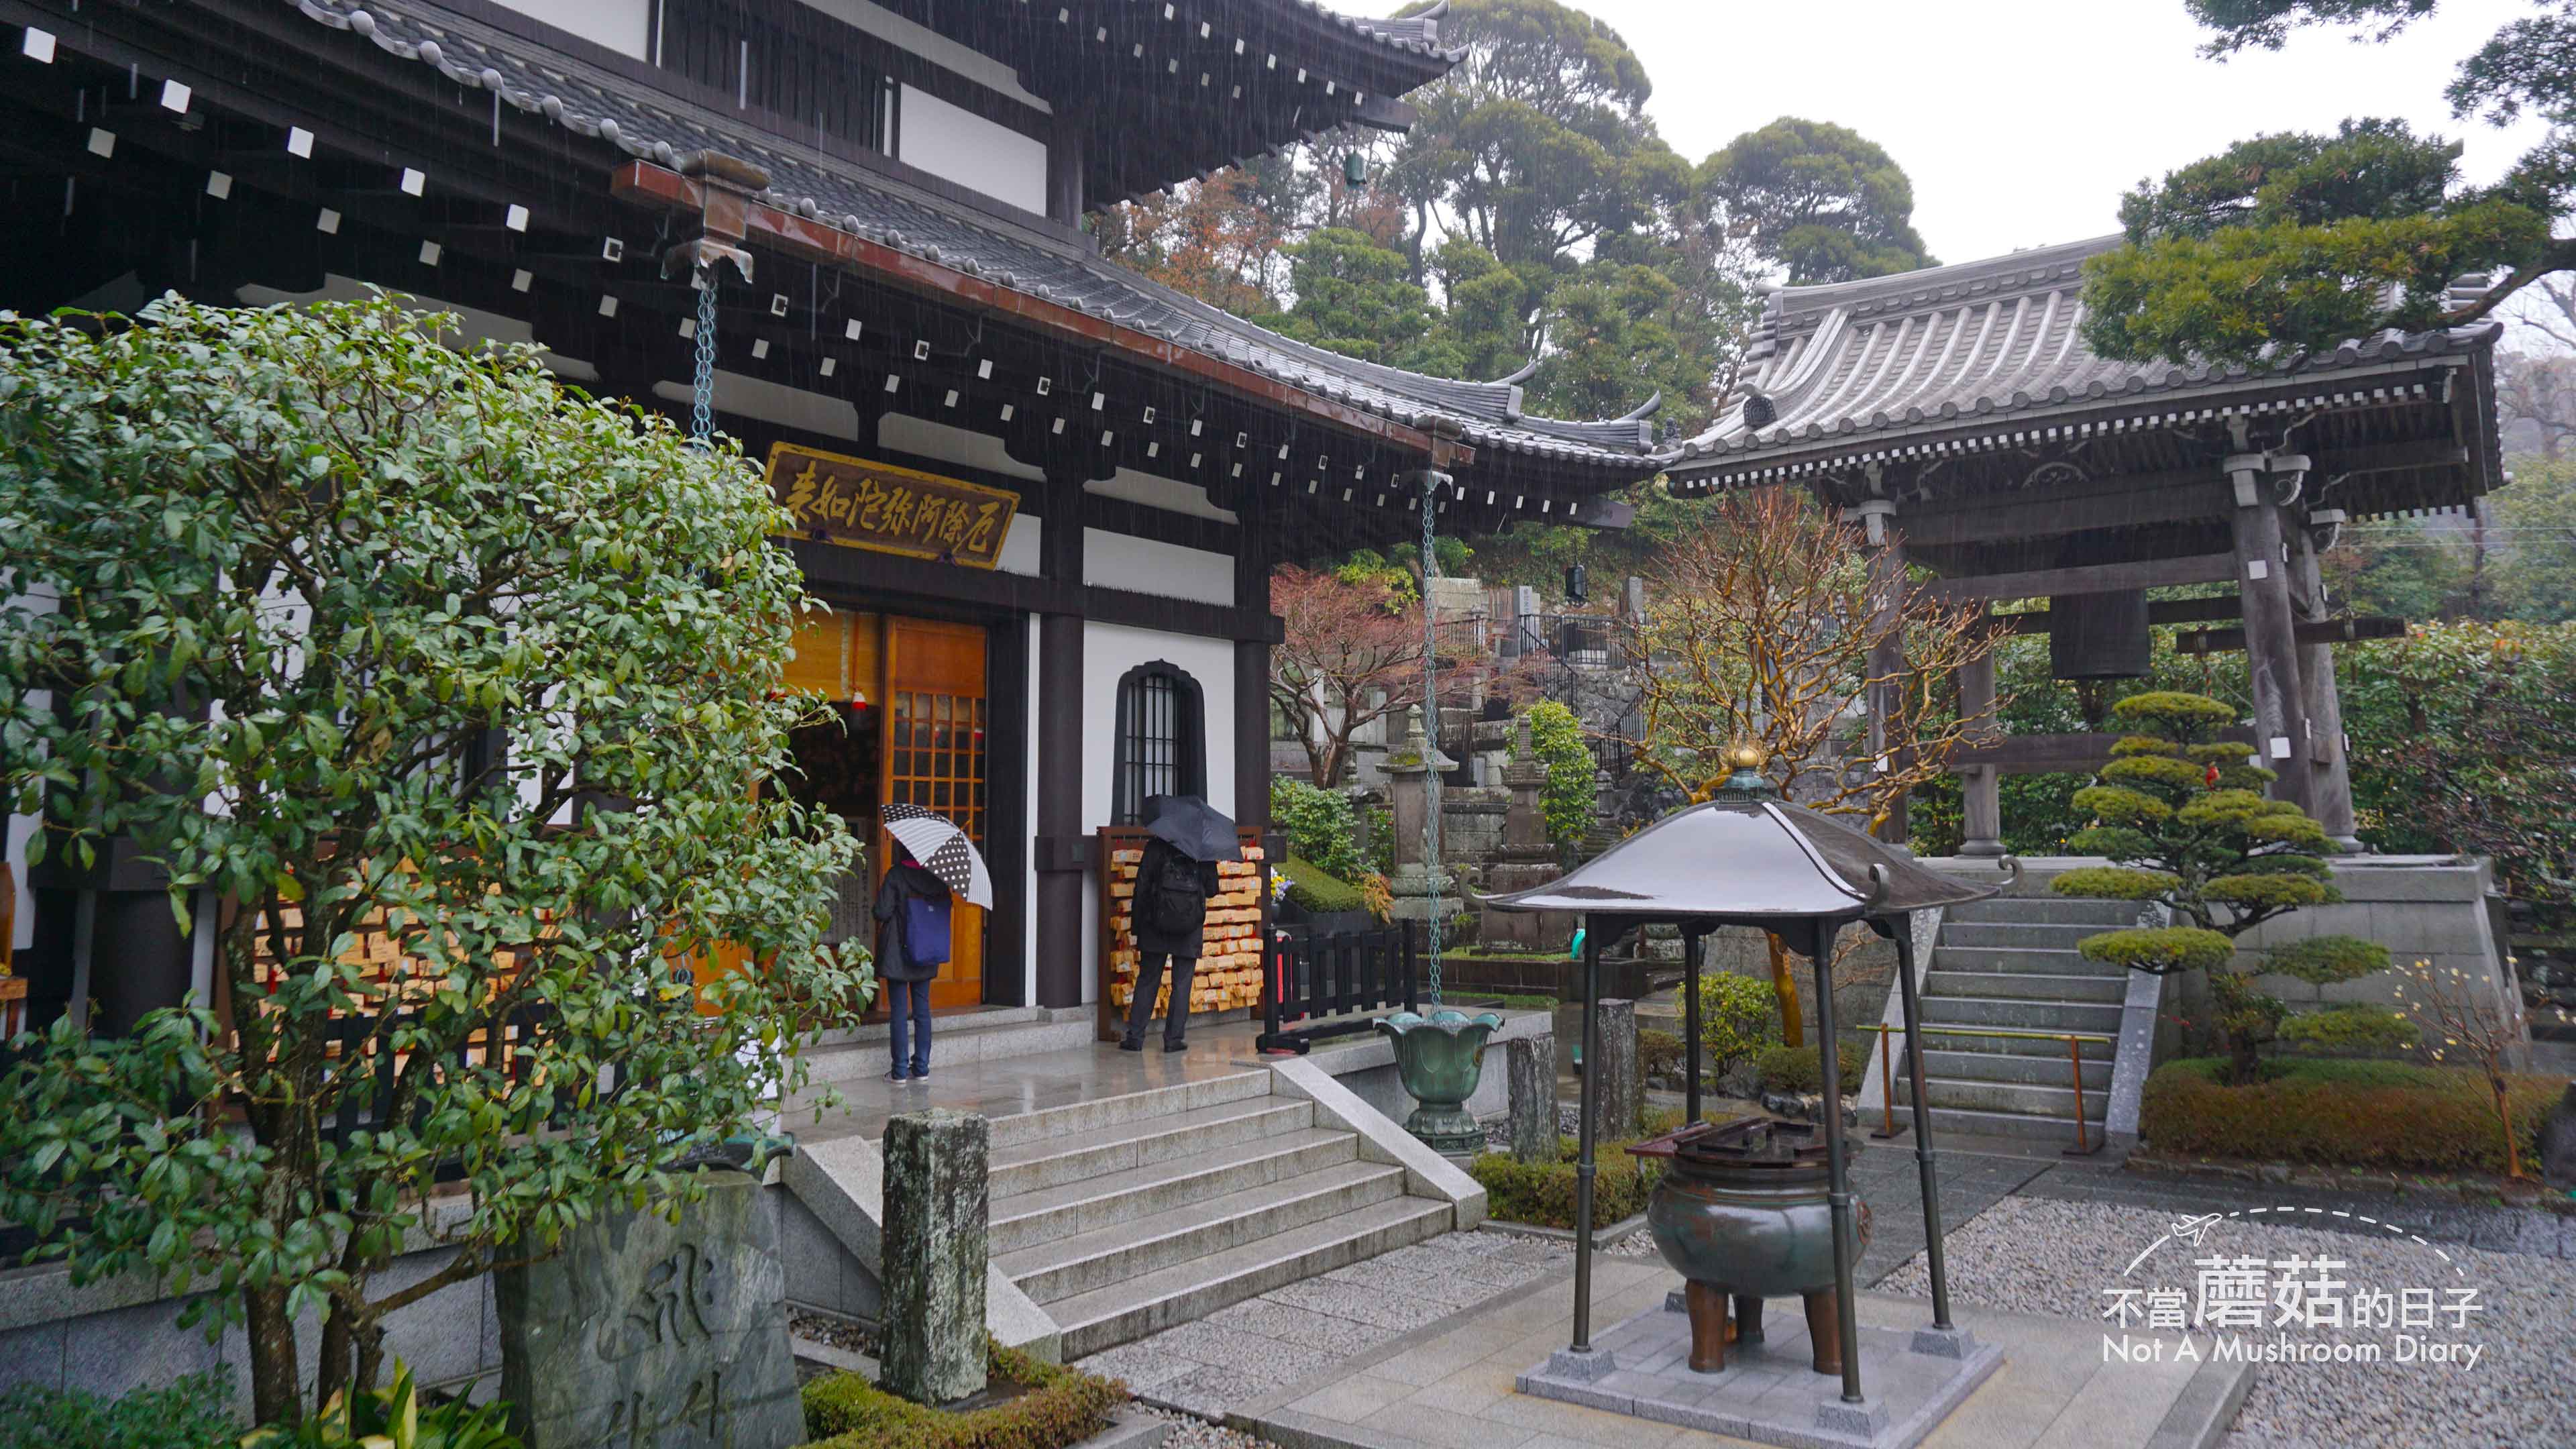 鎌倉 長谷寺